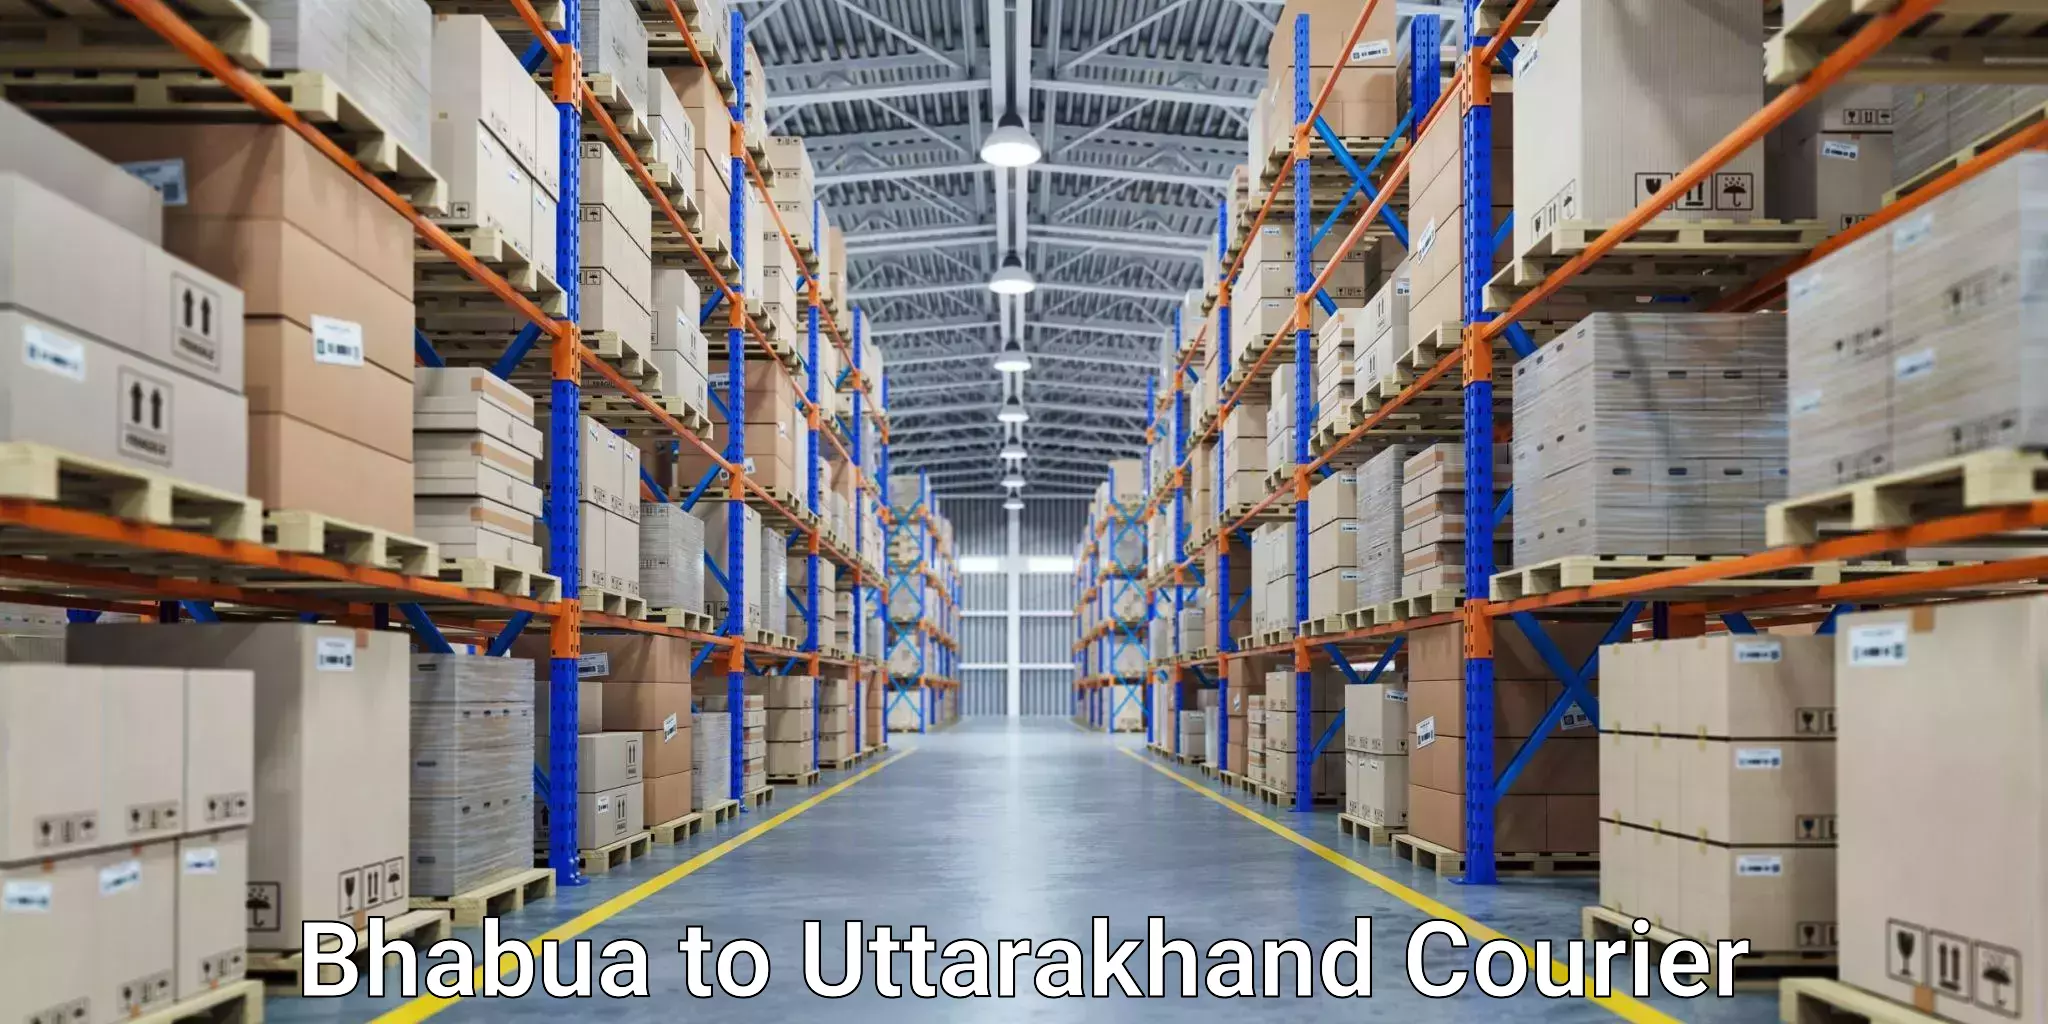 Customized shipping options Bhabua to Paithani